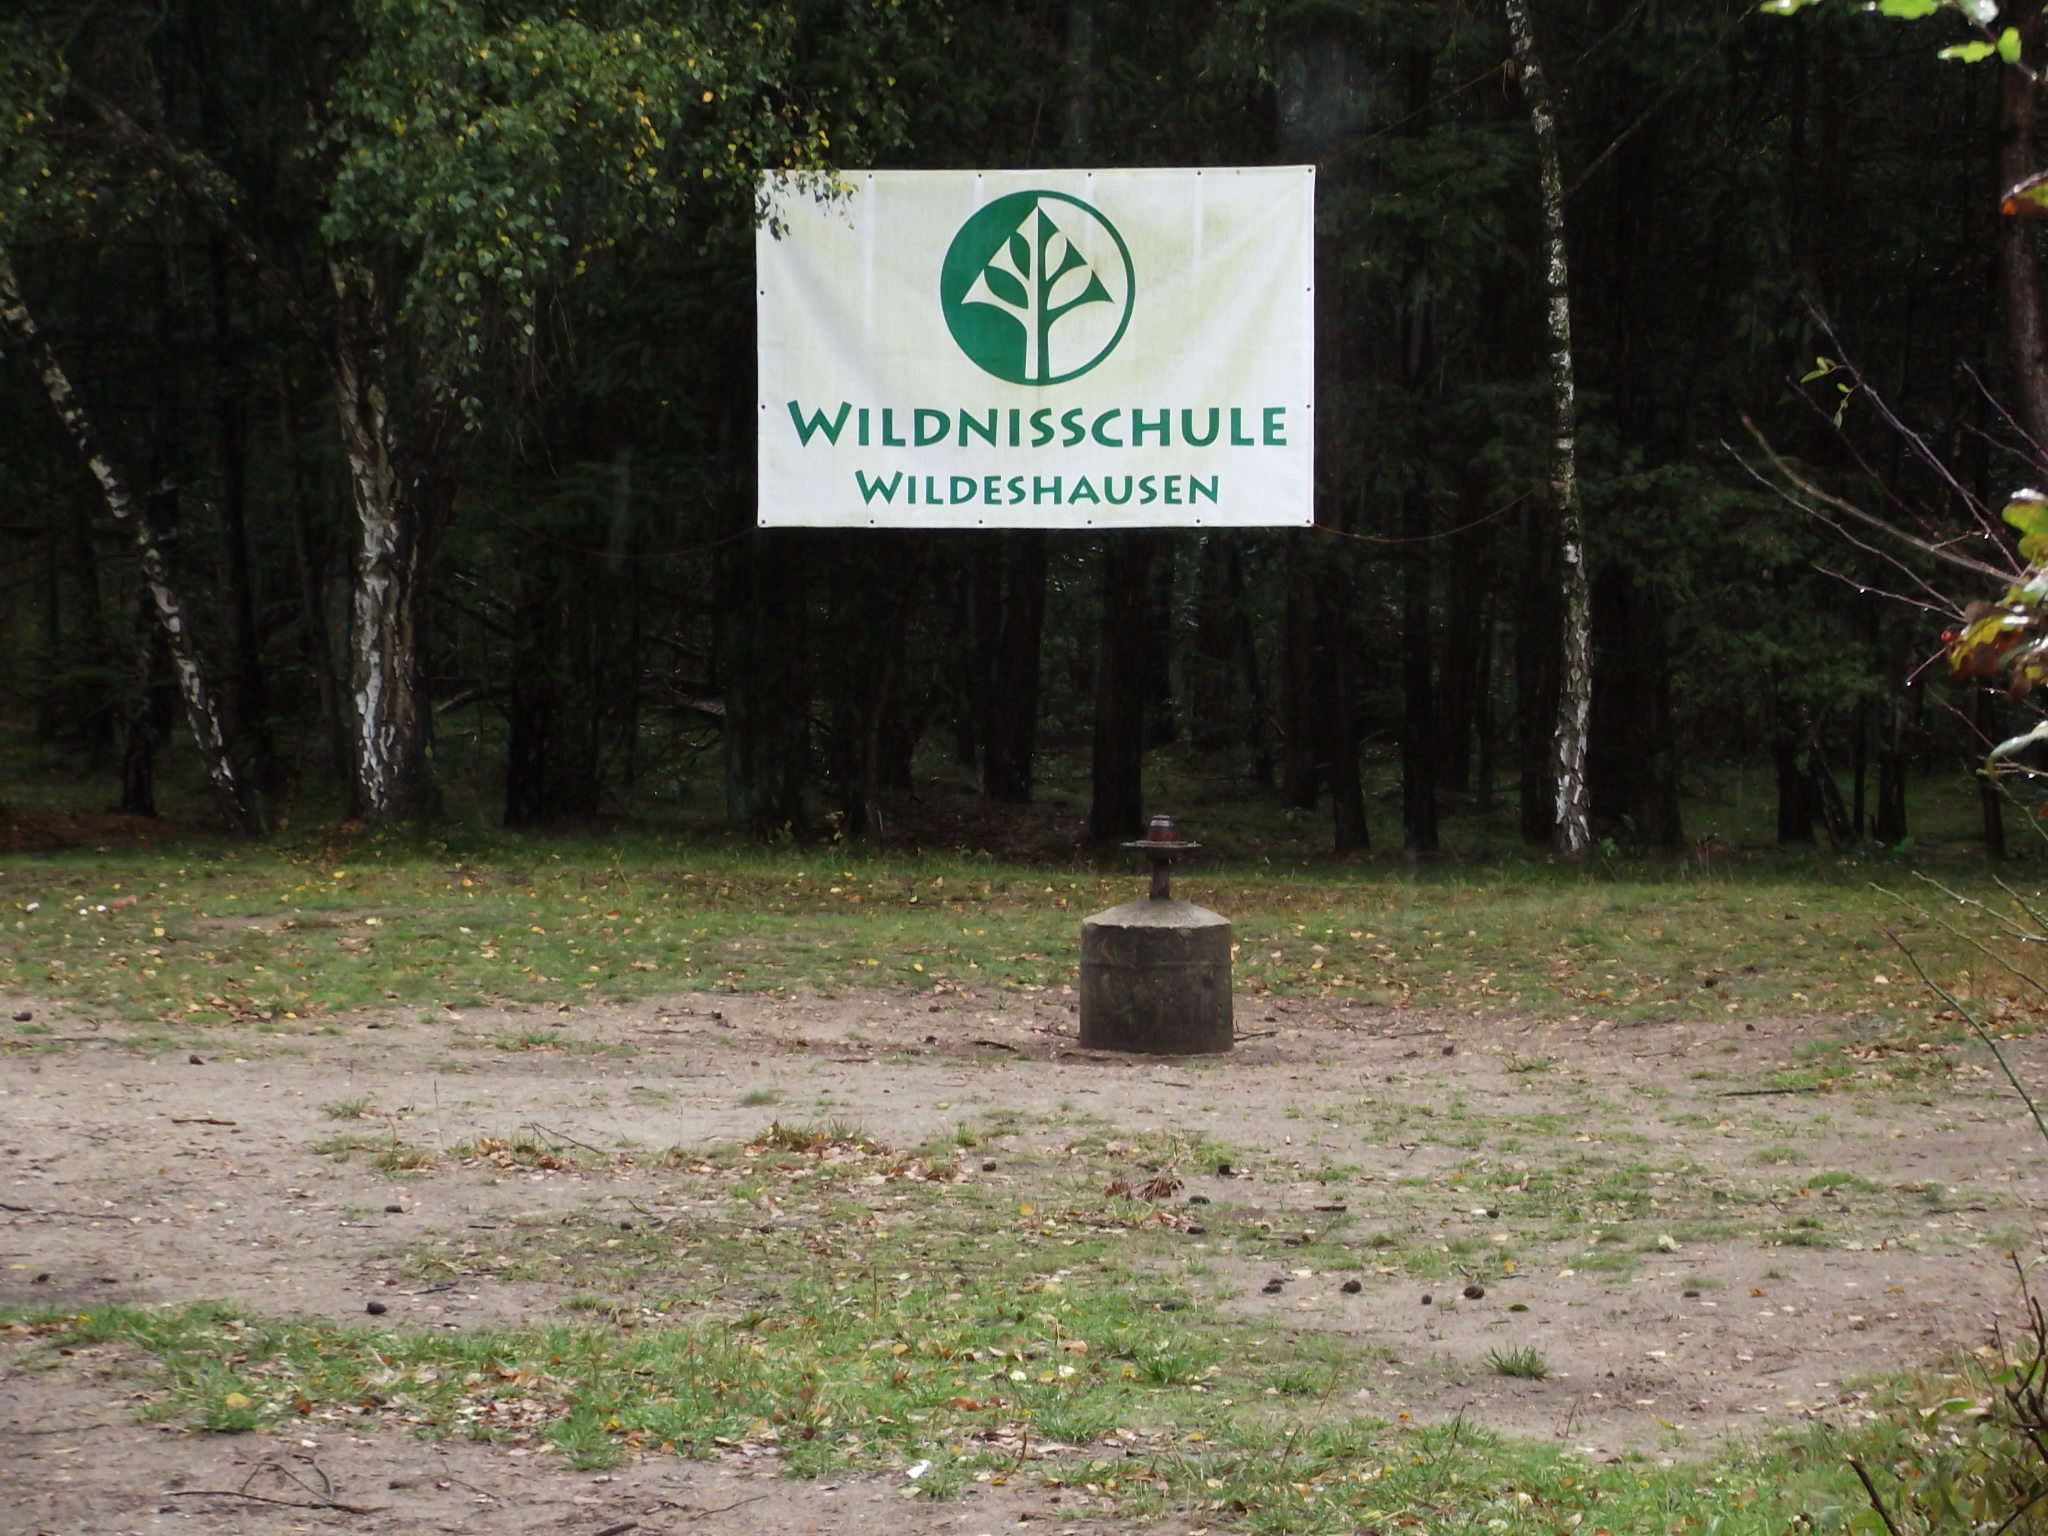 Wildnisschule Wildeshausen am Mikado in Prinzhöfte